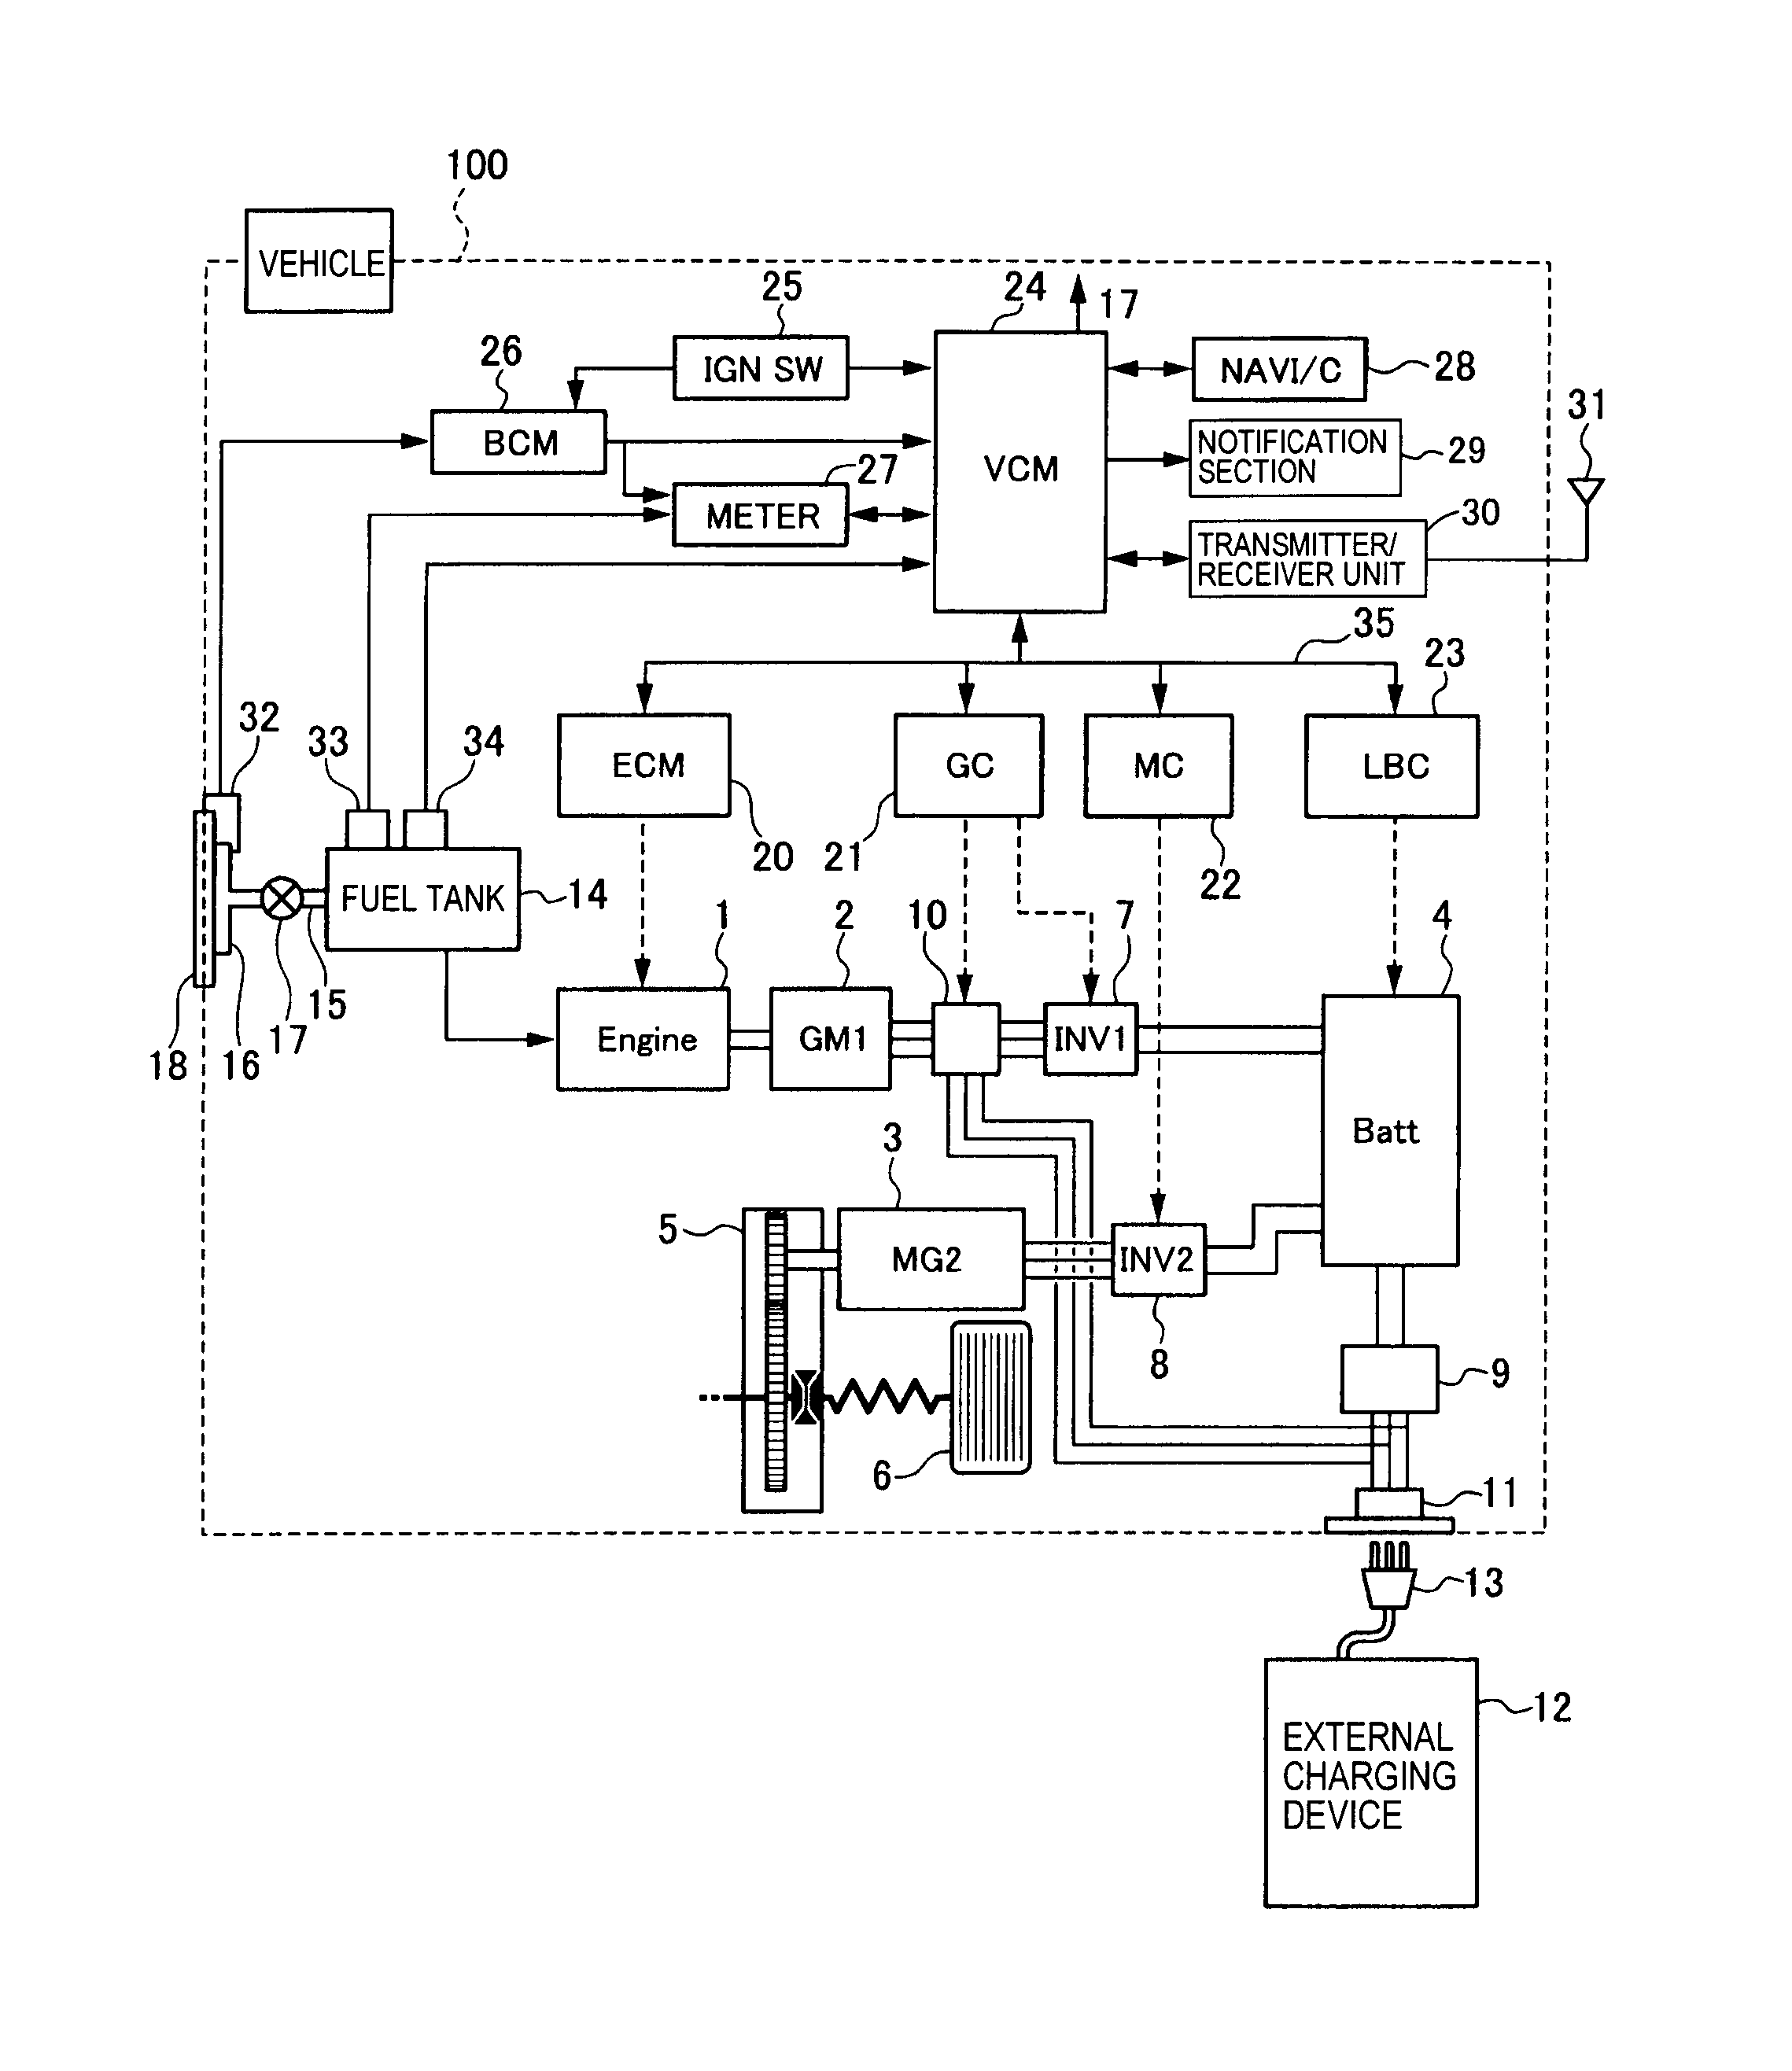 western mvp plow wiring diagram